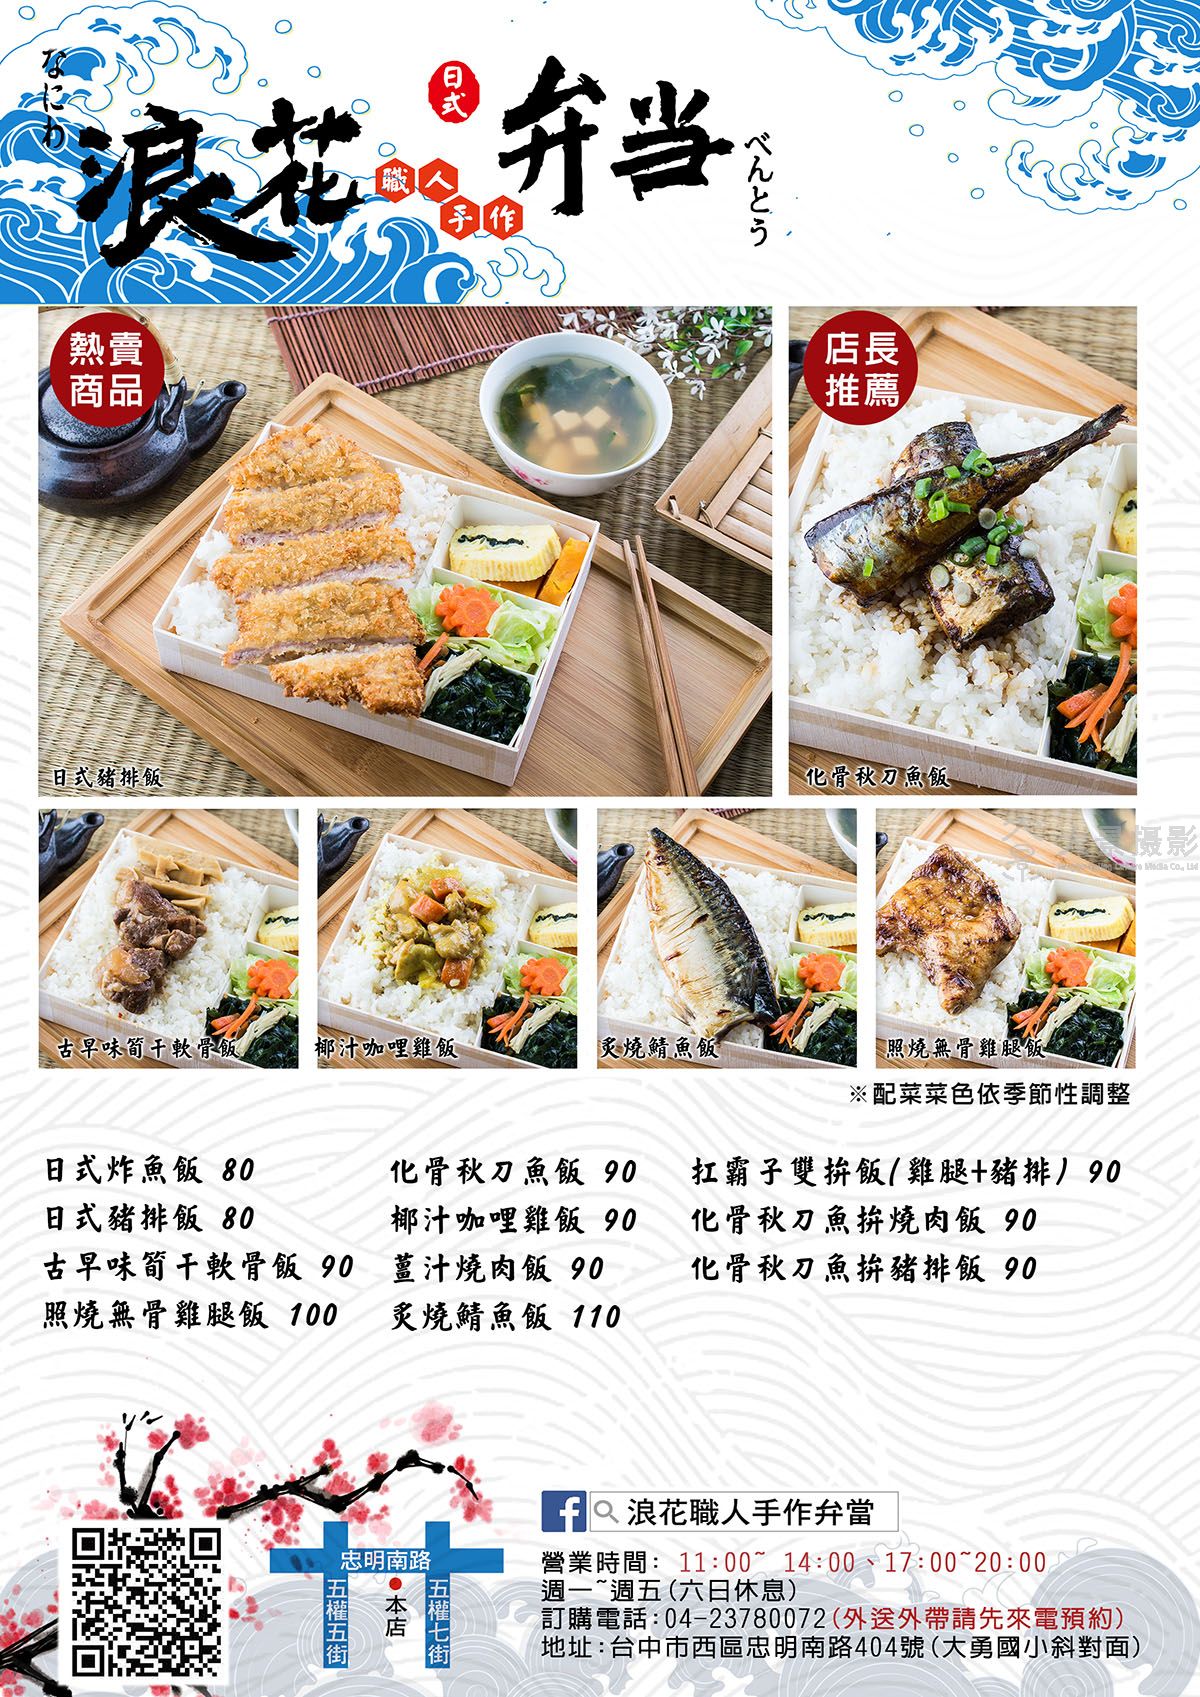 上海菜单设计报价